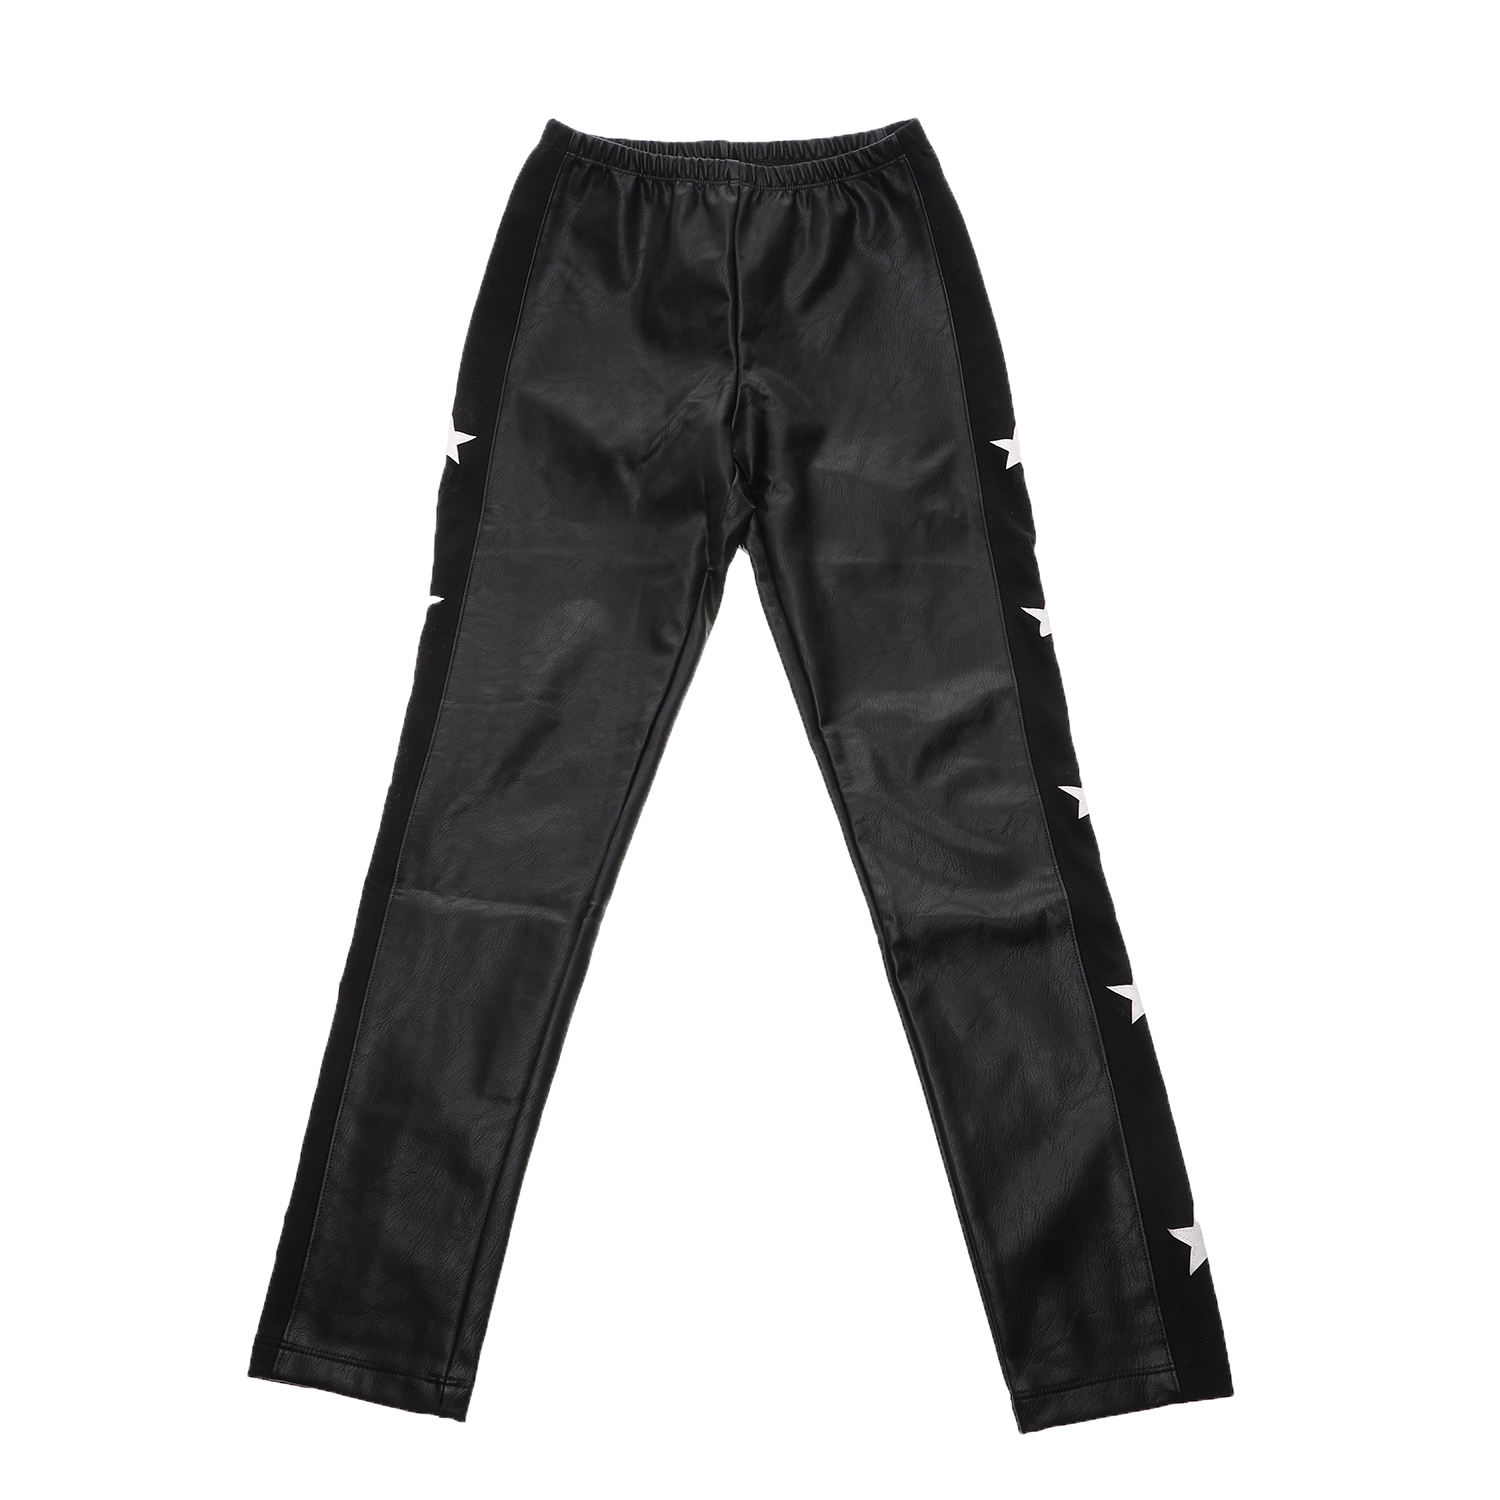 JAKIOO Παιδικό παντελόνι JAKIOO C/STELLE μαύρο